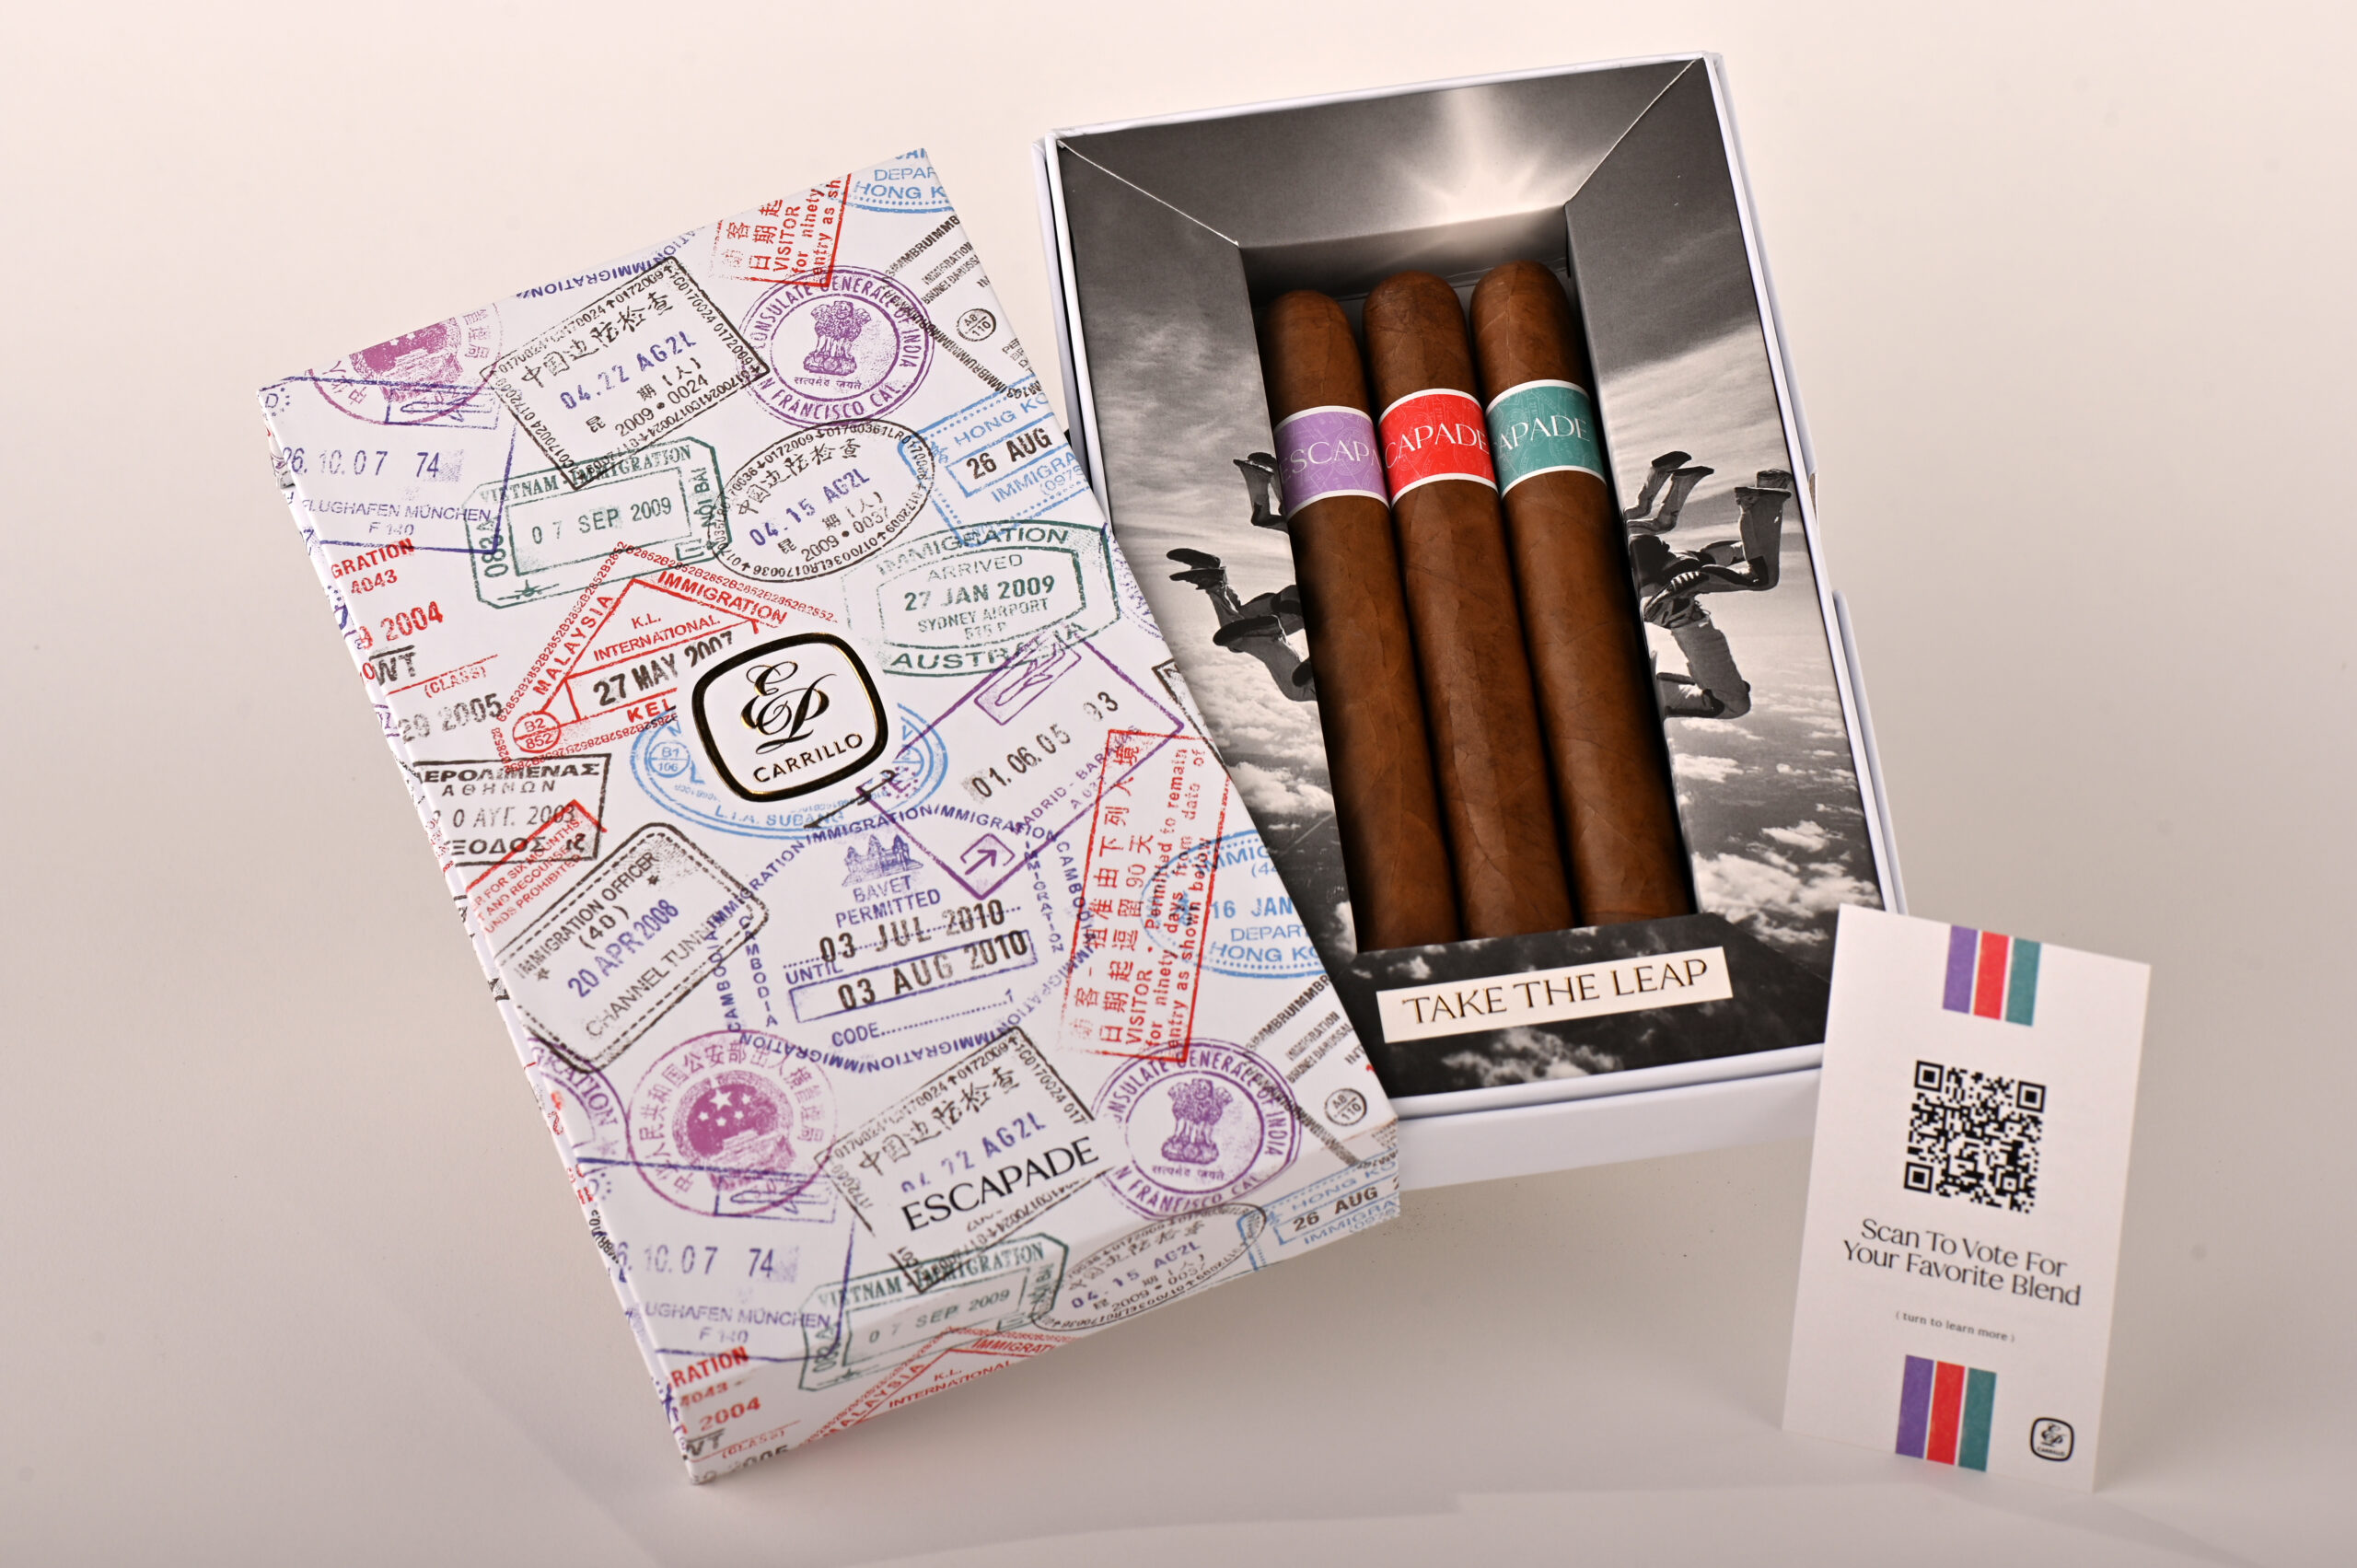 E.P. Carrillo Introduces the Escapade — Created With Consumer Feedback To Reach New Cigar Smokers